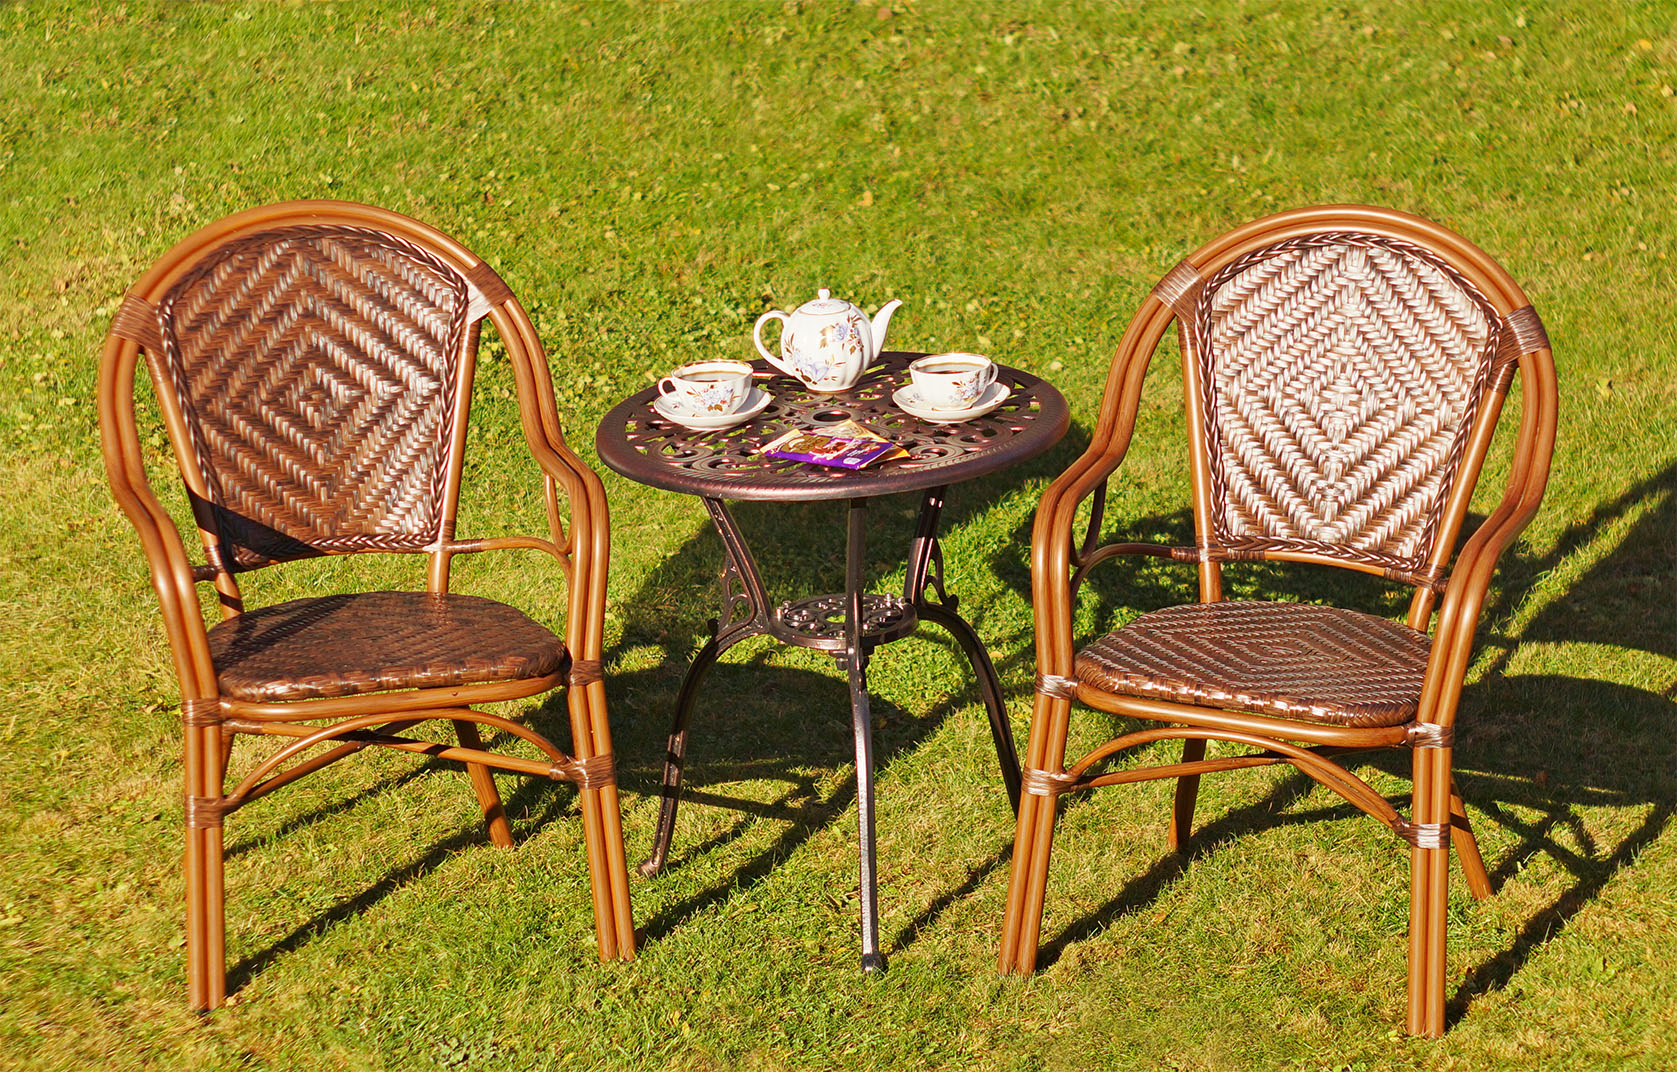 Садовая мебель с плетением, чайный комплект мебели из искусственного ротанга, круглый стол с креслами для сада и дачи, фабрика садовой мебели, недорогая плетеная мебель для дачи